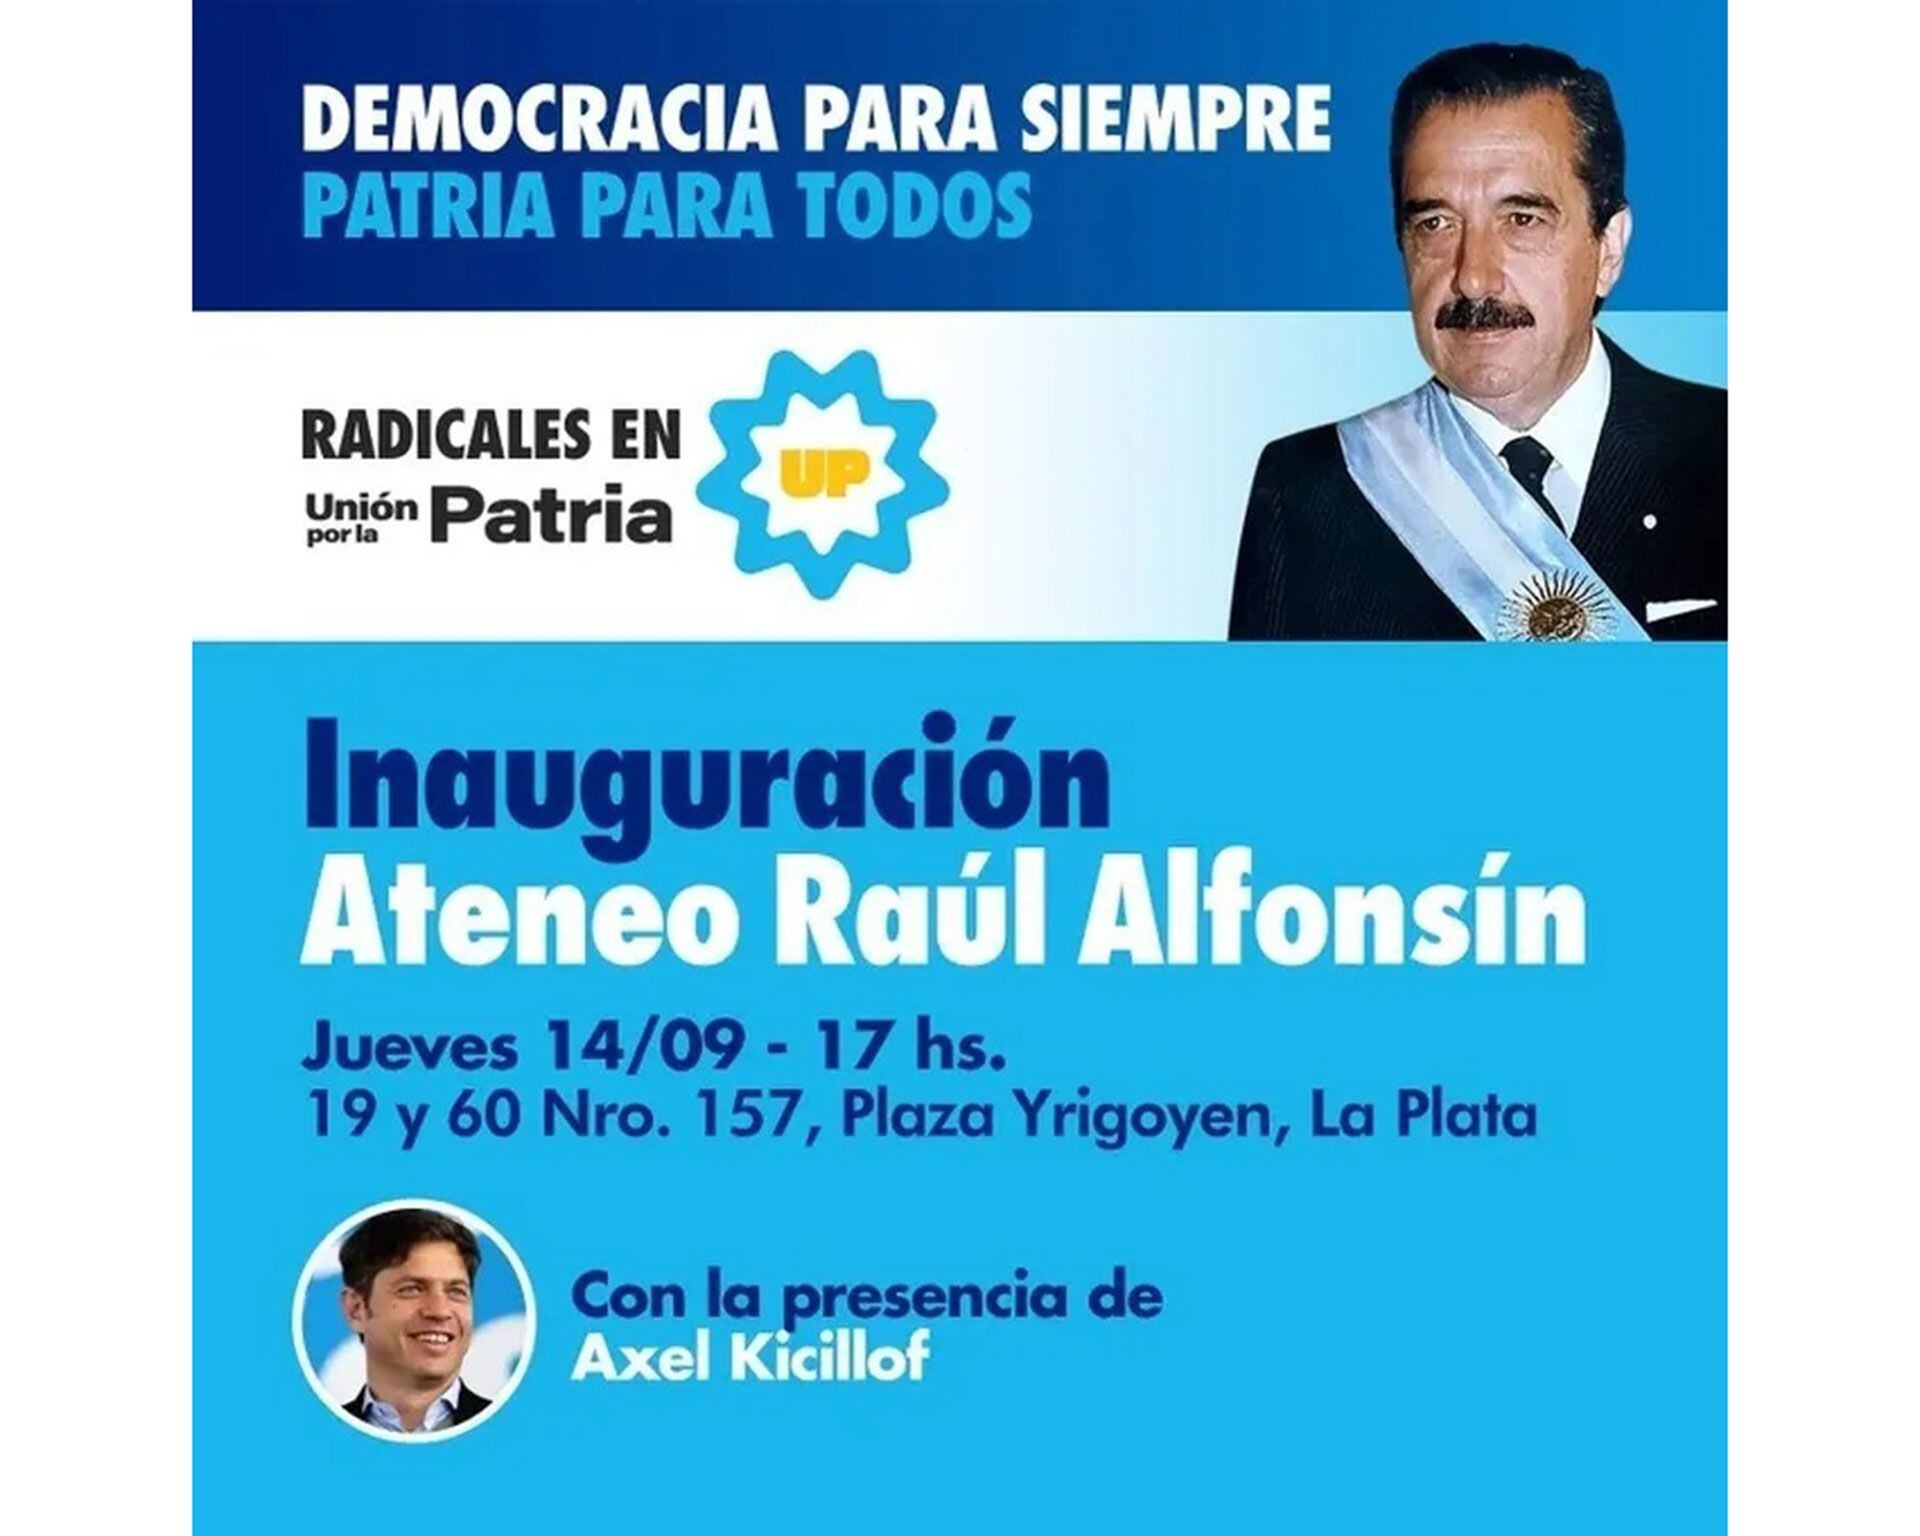 La convocatoria partidaria en homenaje a Raúl Alfonsín que tendrá la participación de Axel Kicillof